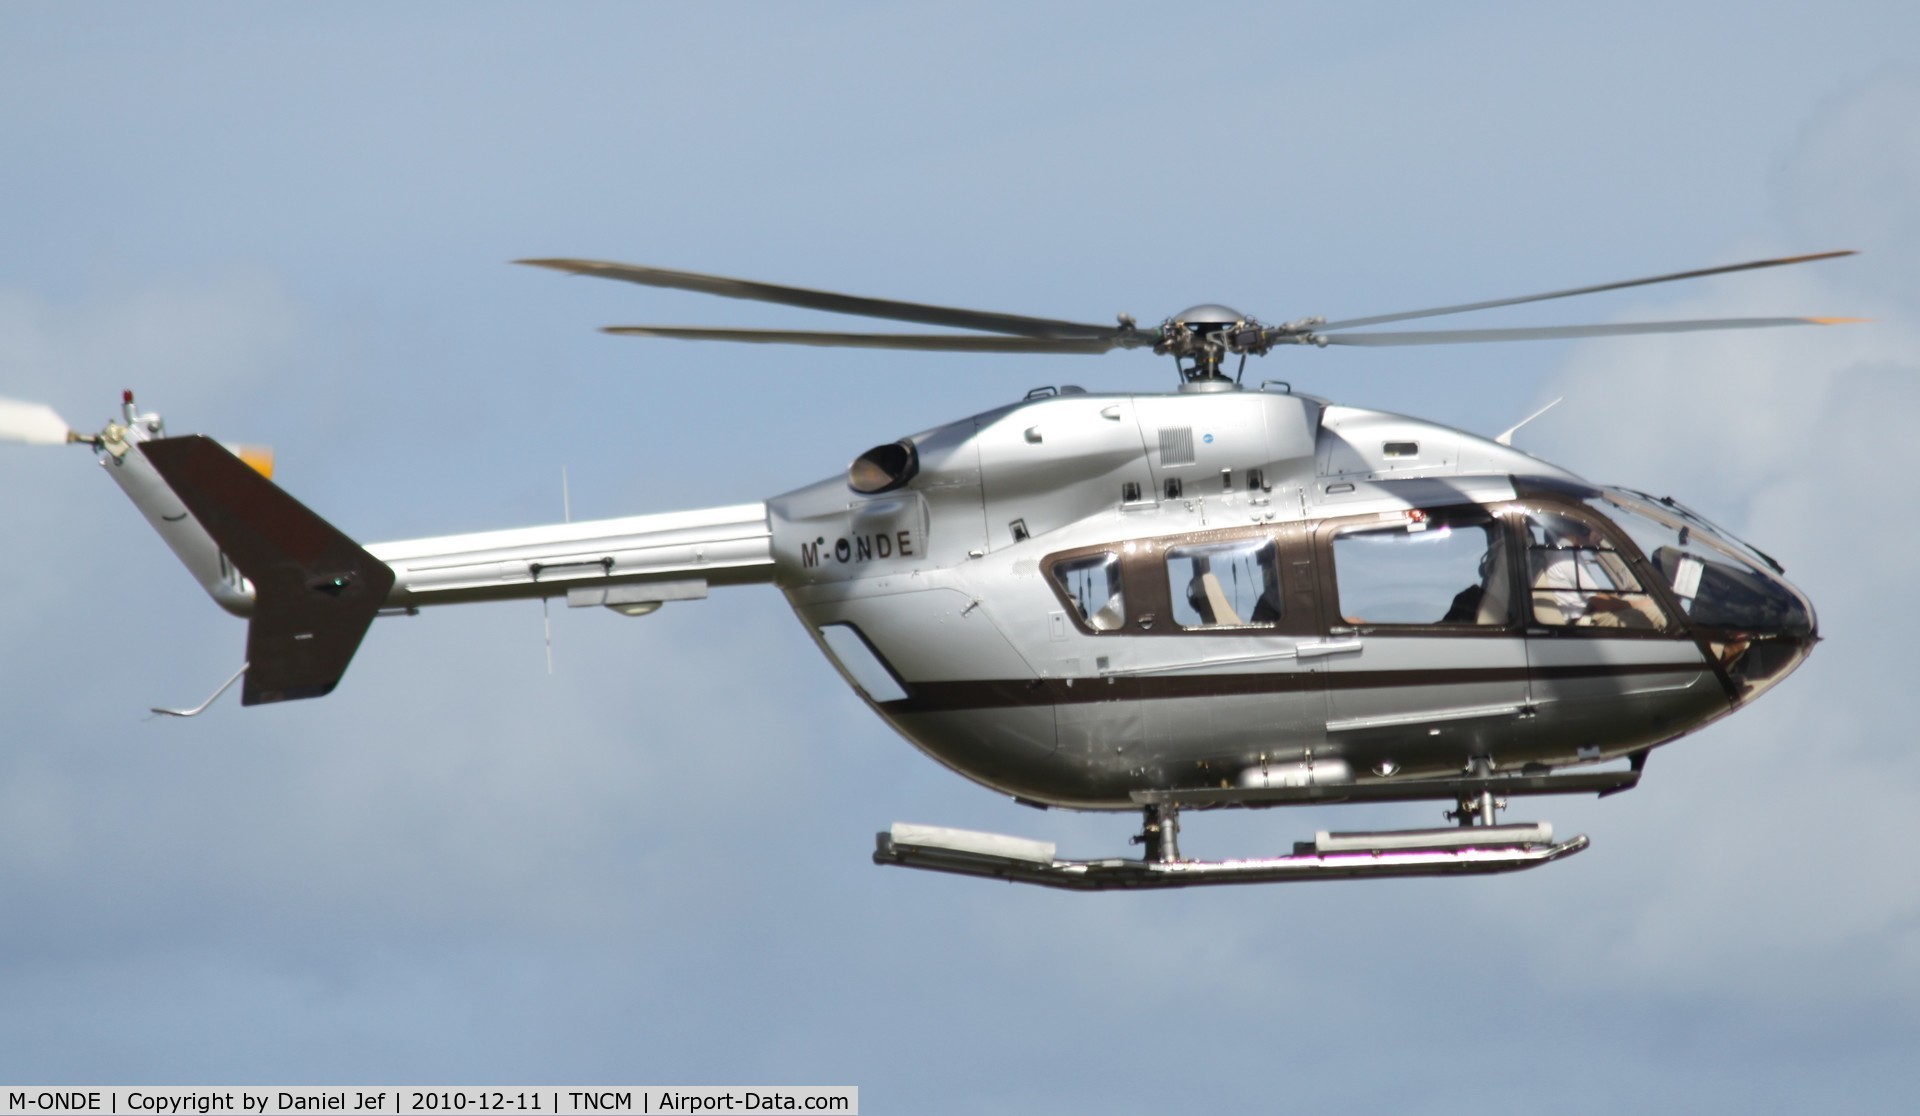 M-ONDE, 2004 Eurocopter-Kawasaki BK-117C-2 C/N 9052, M-ONDE departing TNCM